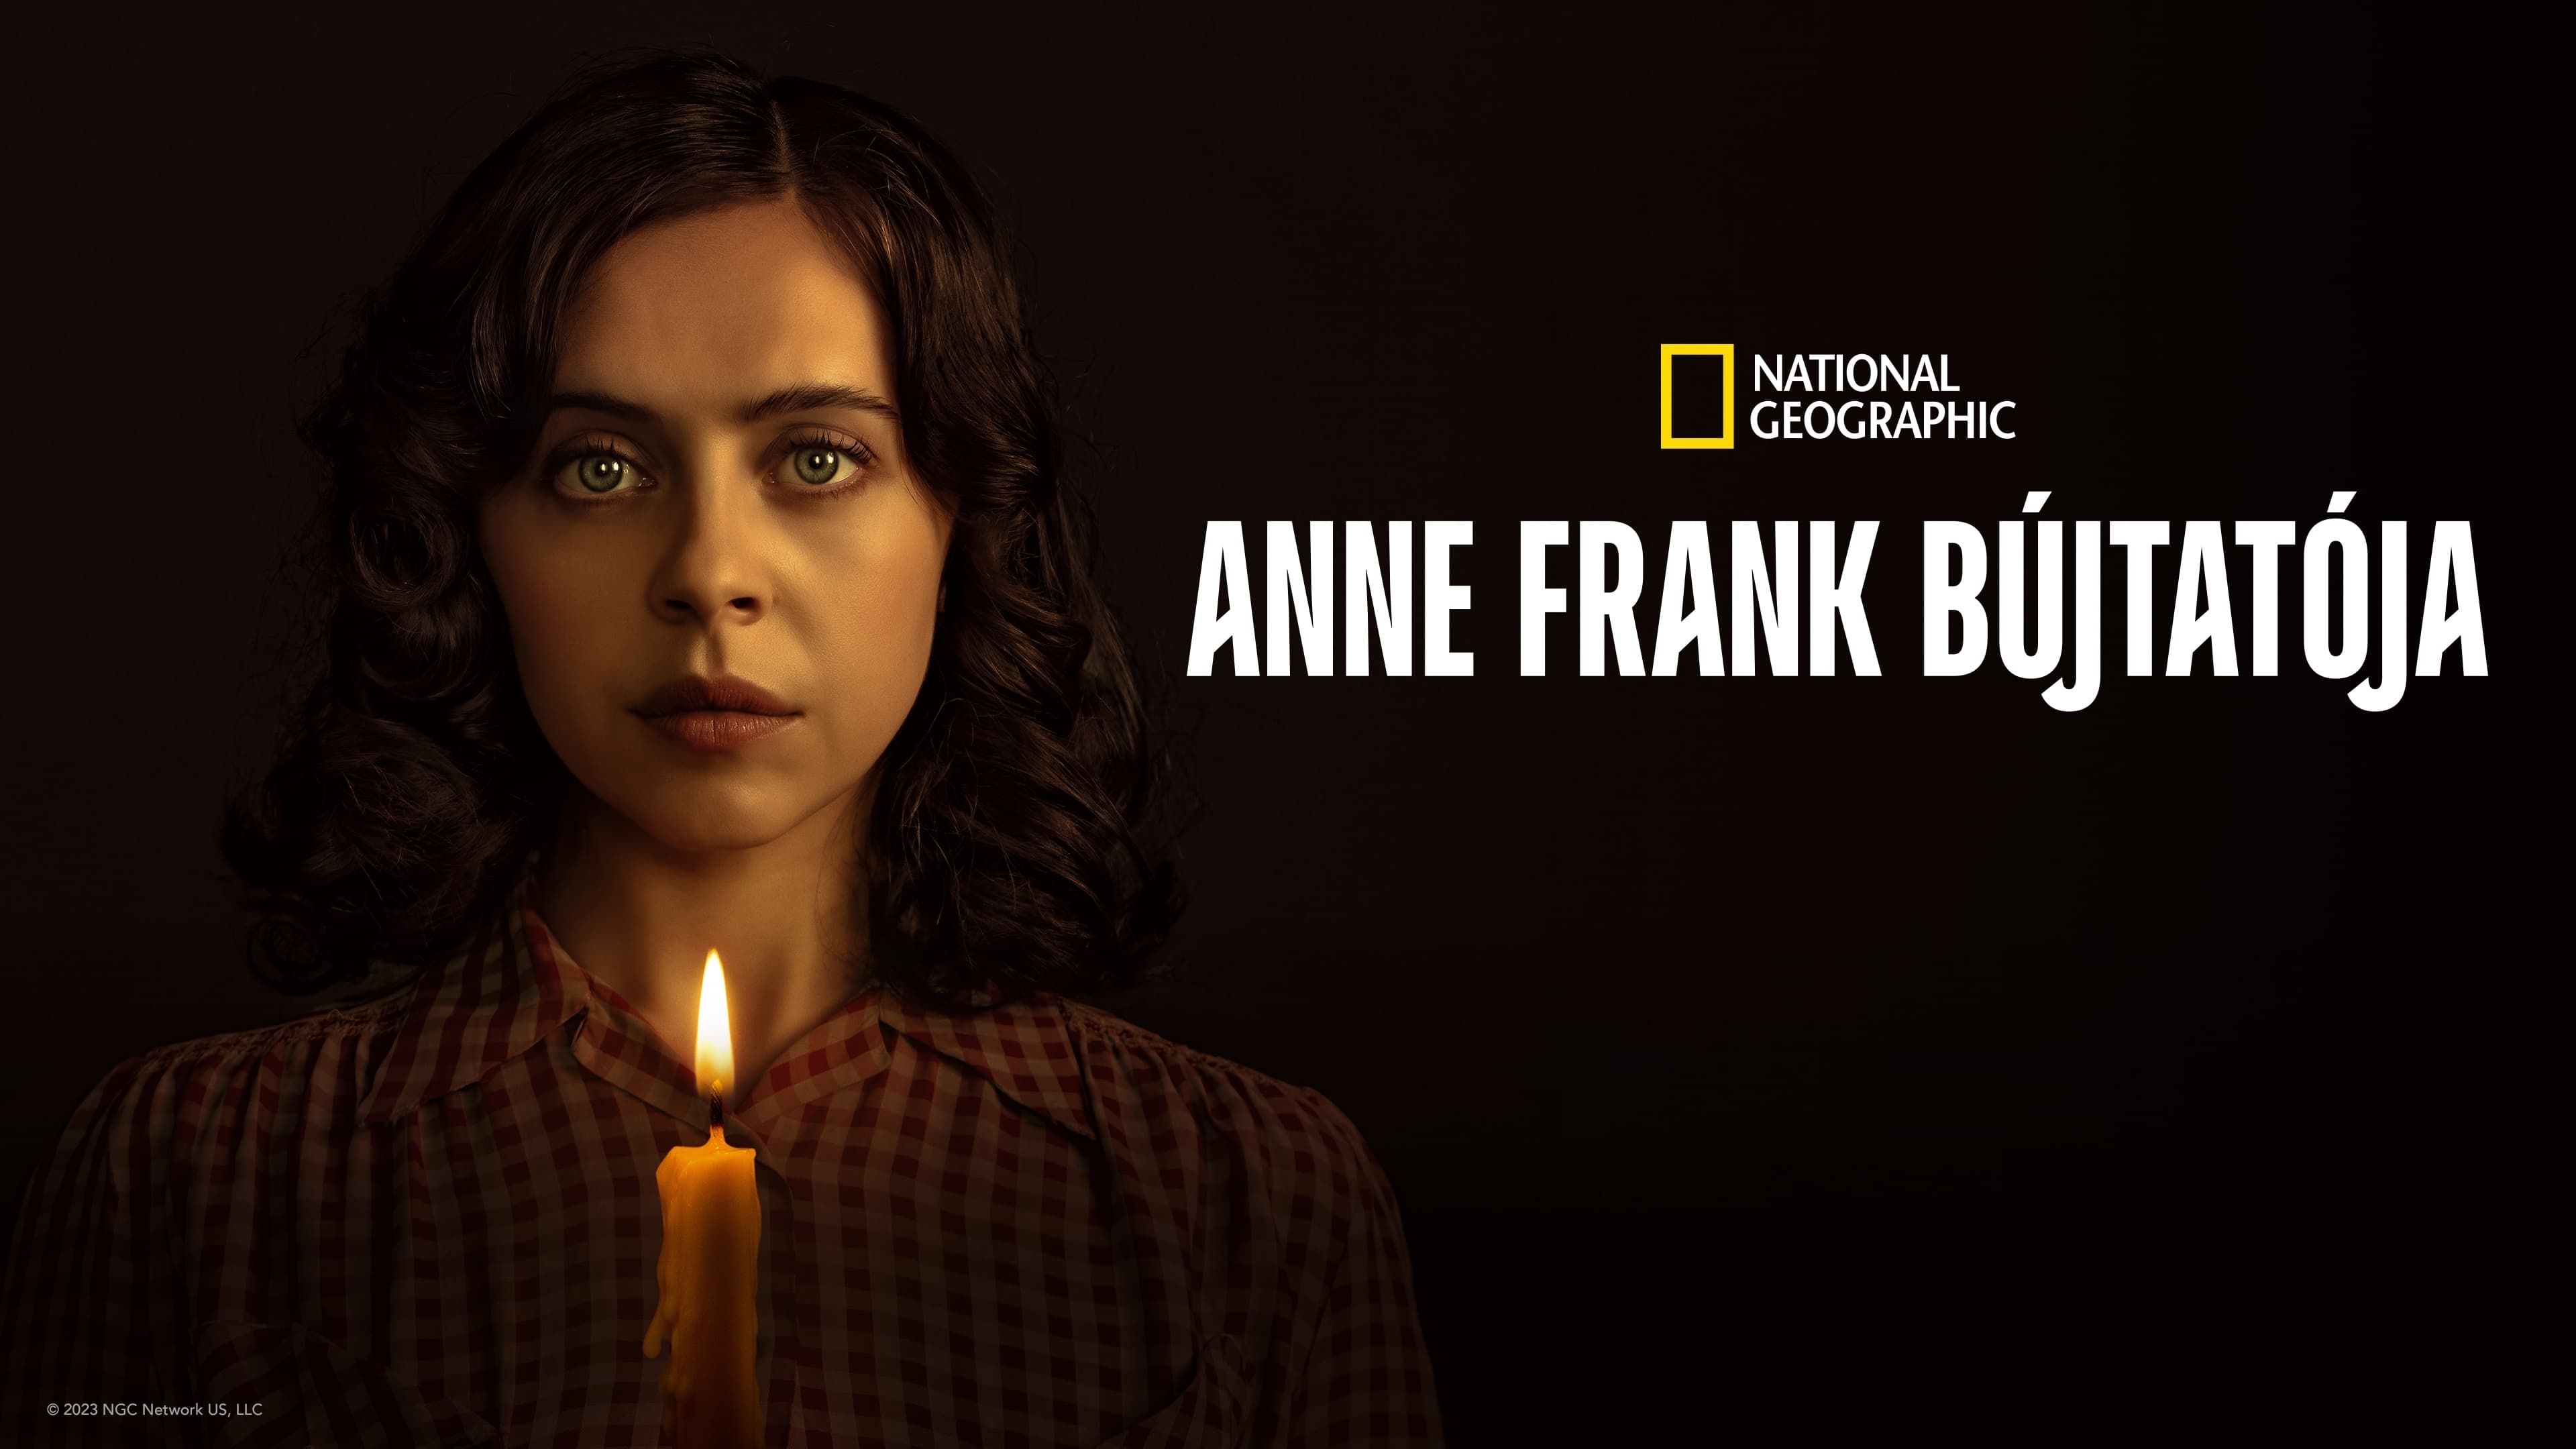 Una pequeña luz: Protegiendo a Ana Frank